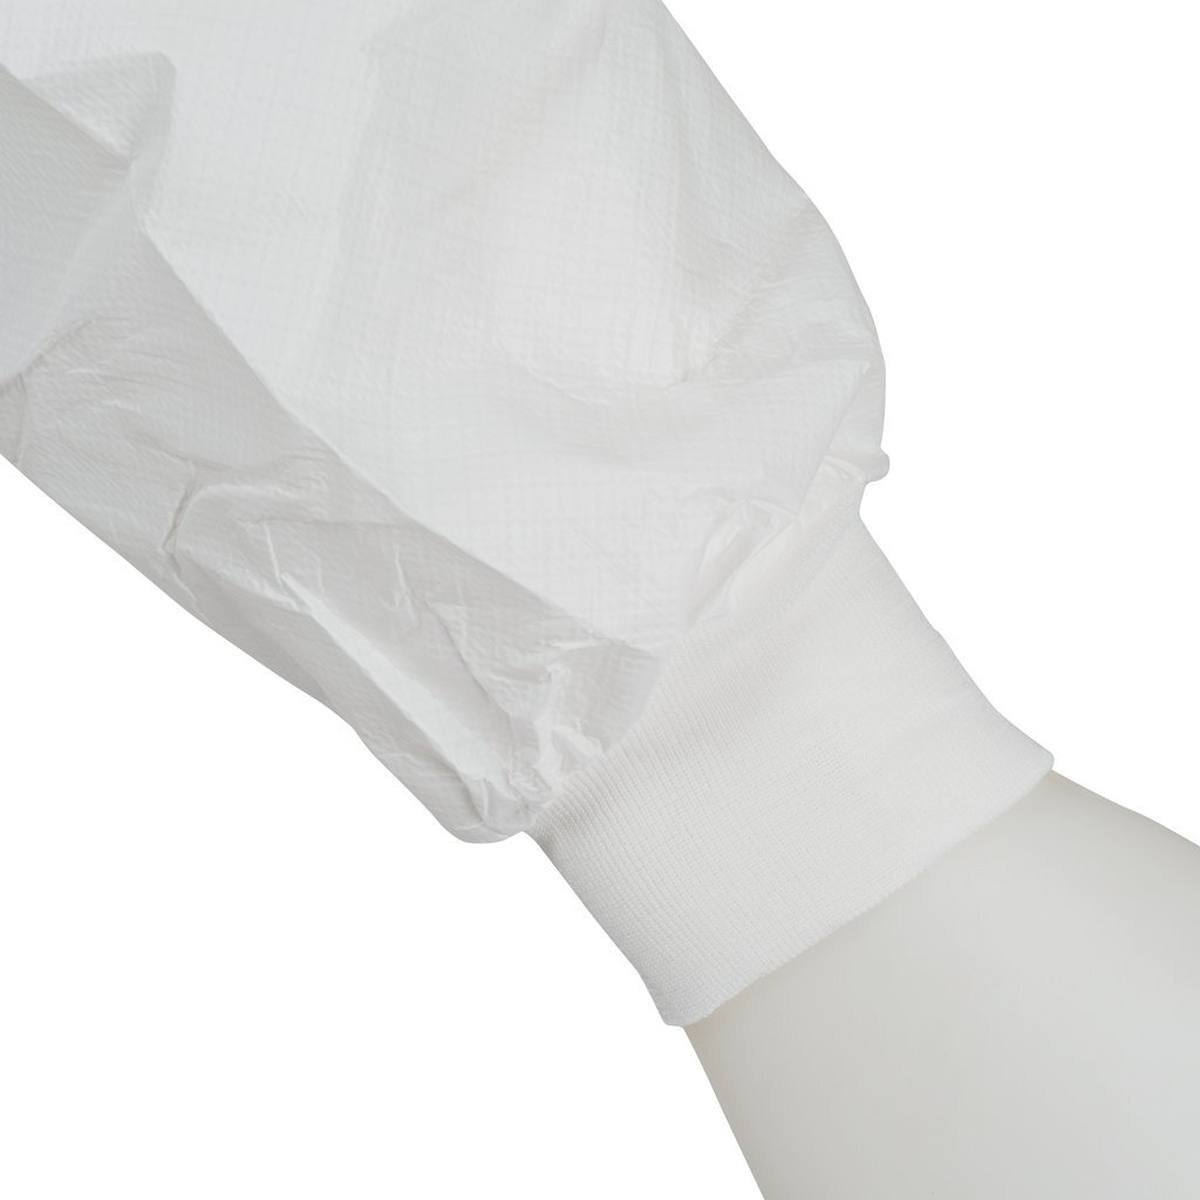 Tuta 3M 4535, bianco blu, TIPO 5/6, taglia XL, materiale SMMMS e PE, traspirante, cerniera che può essere chiusa con nastro adesivo, polsini in maglia